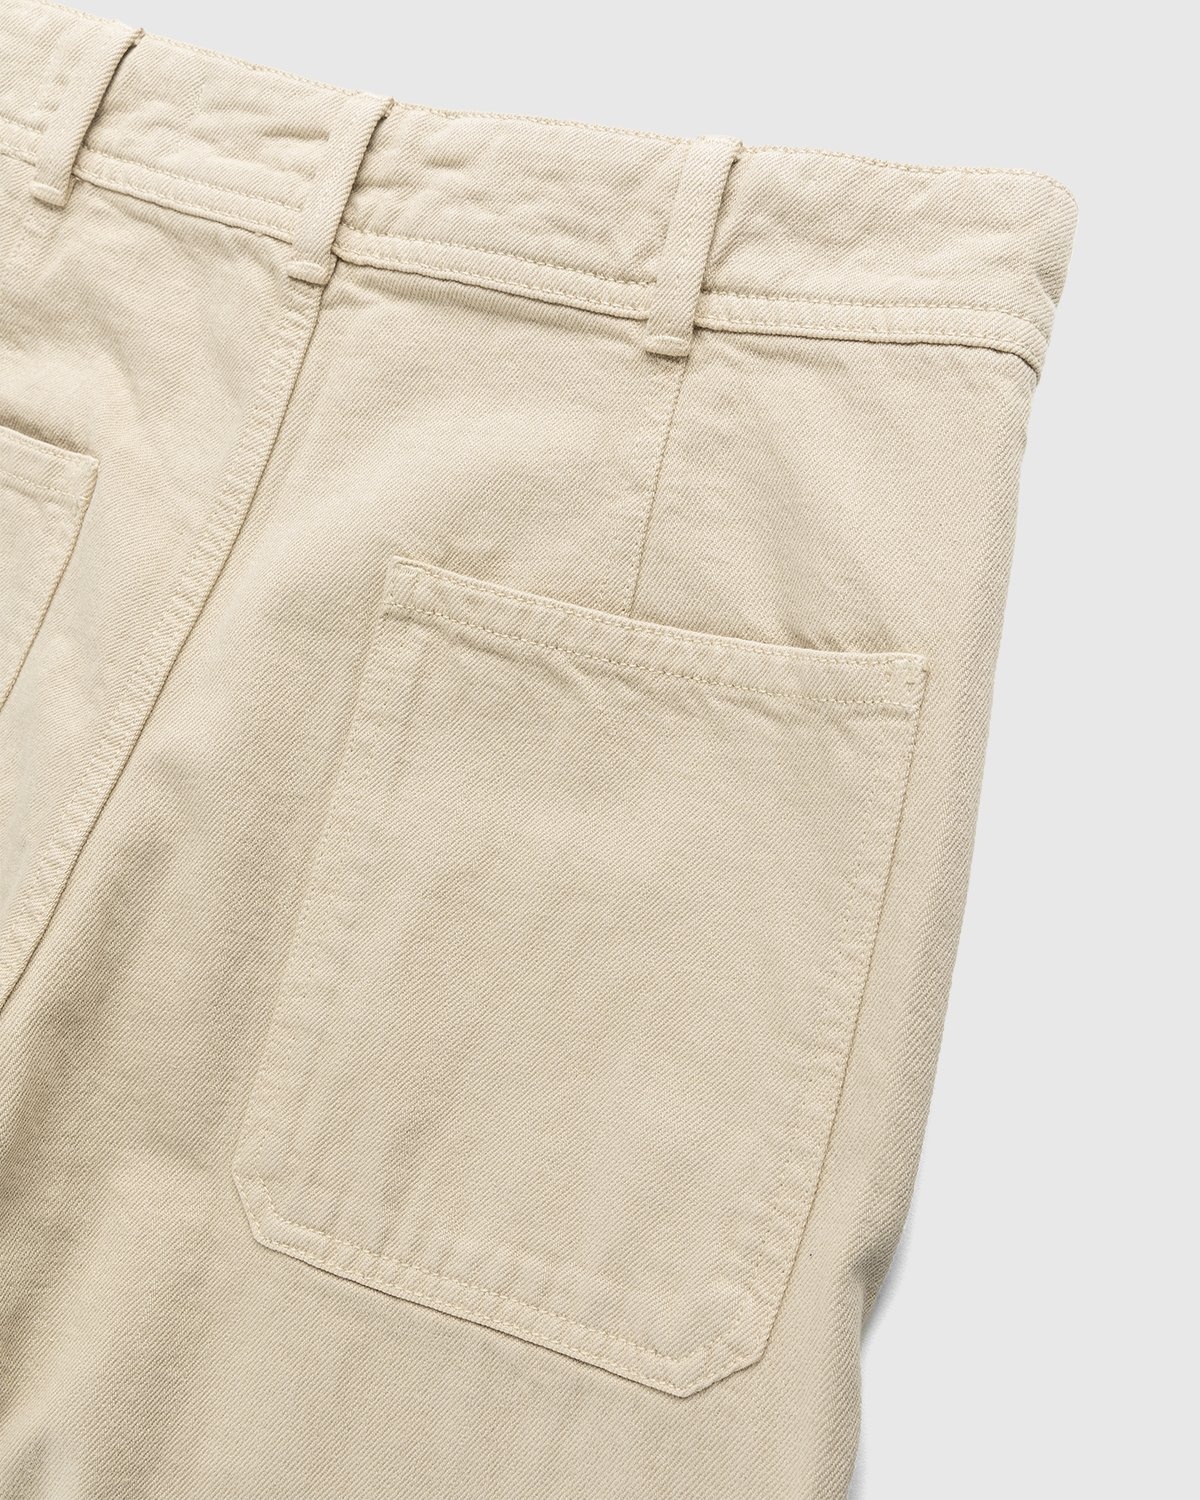 Sandro Patty Denim Sailor Pants, $250, Bloomingdale's